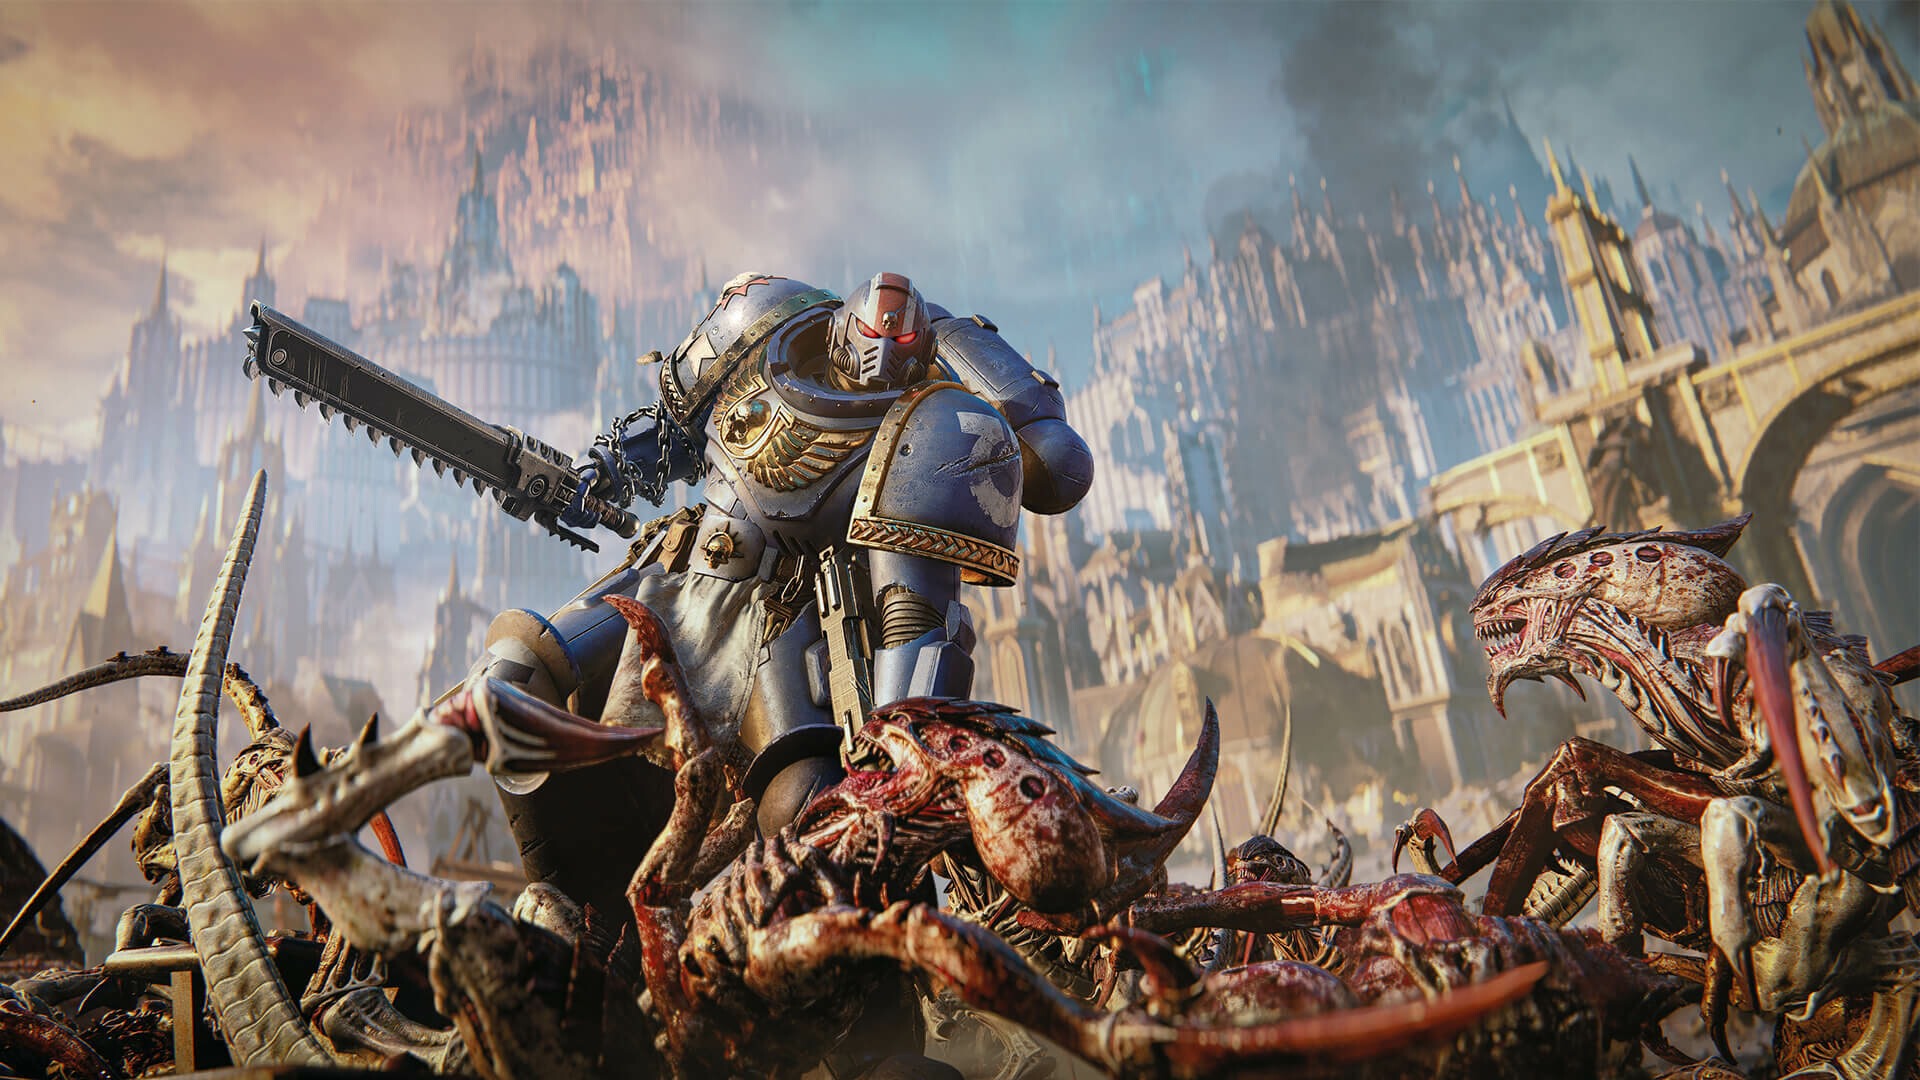 Xbox на gamescom, Warhammer 40,000: Space Marine 2, Dead Cells и не только — в Итогах недели от 2 августа